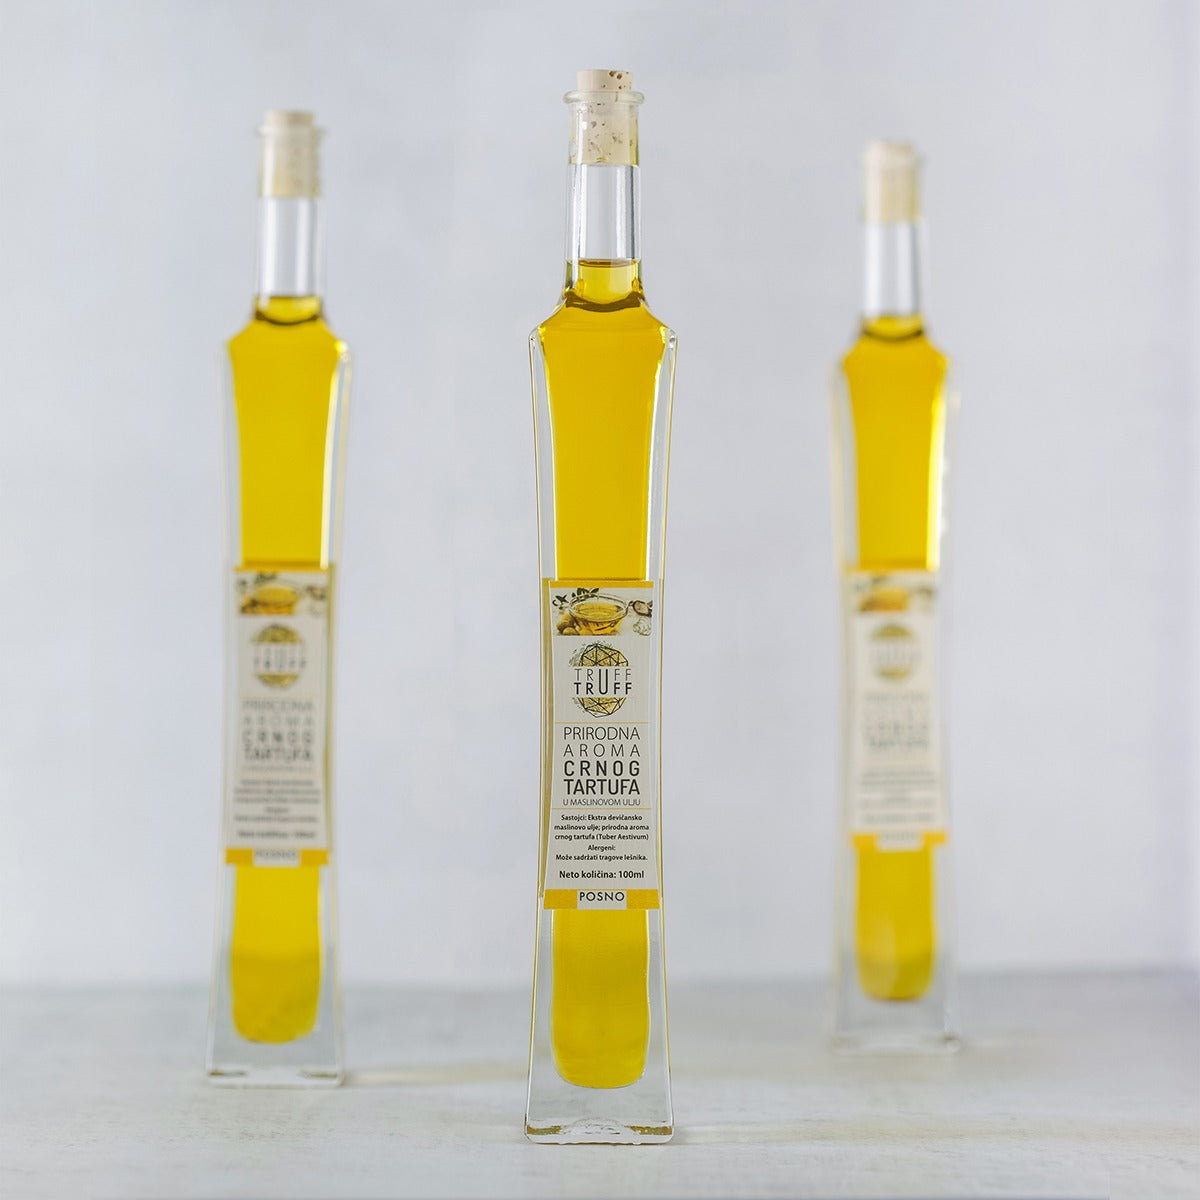 Tri proizvoda Truff Truff Elegant maslinovo ulje sa aromom tartufa u jednoj slici